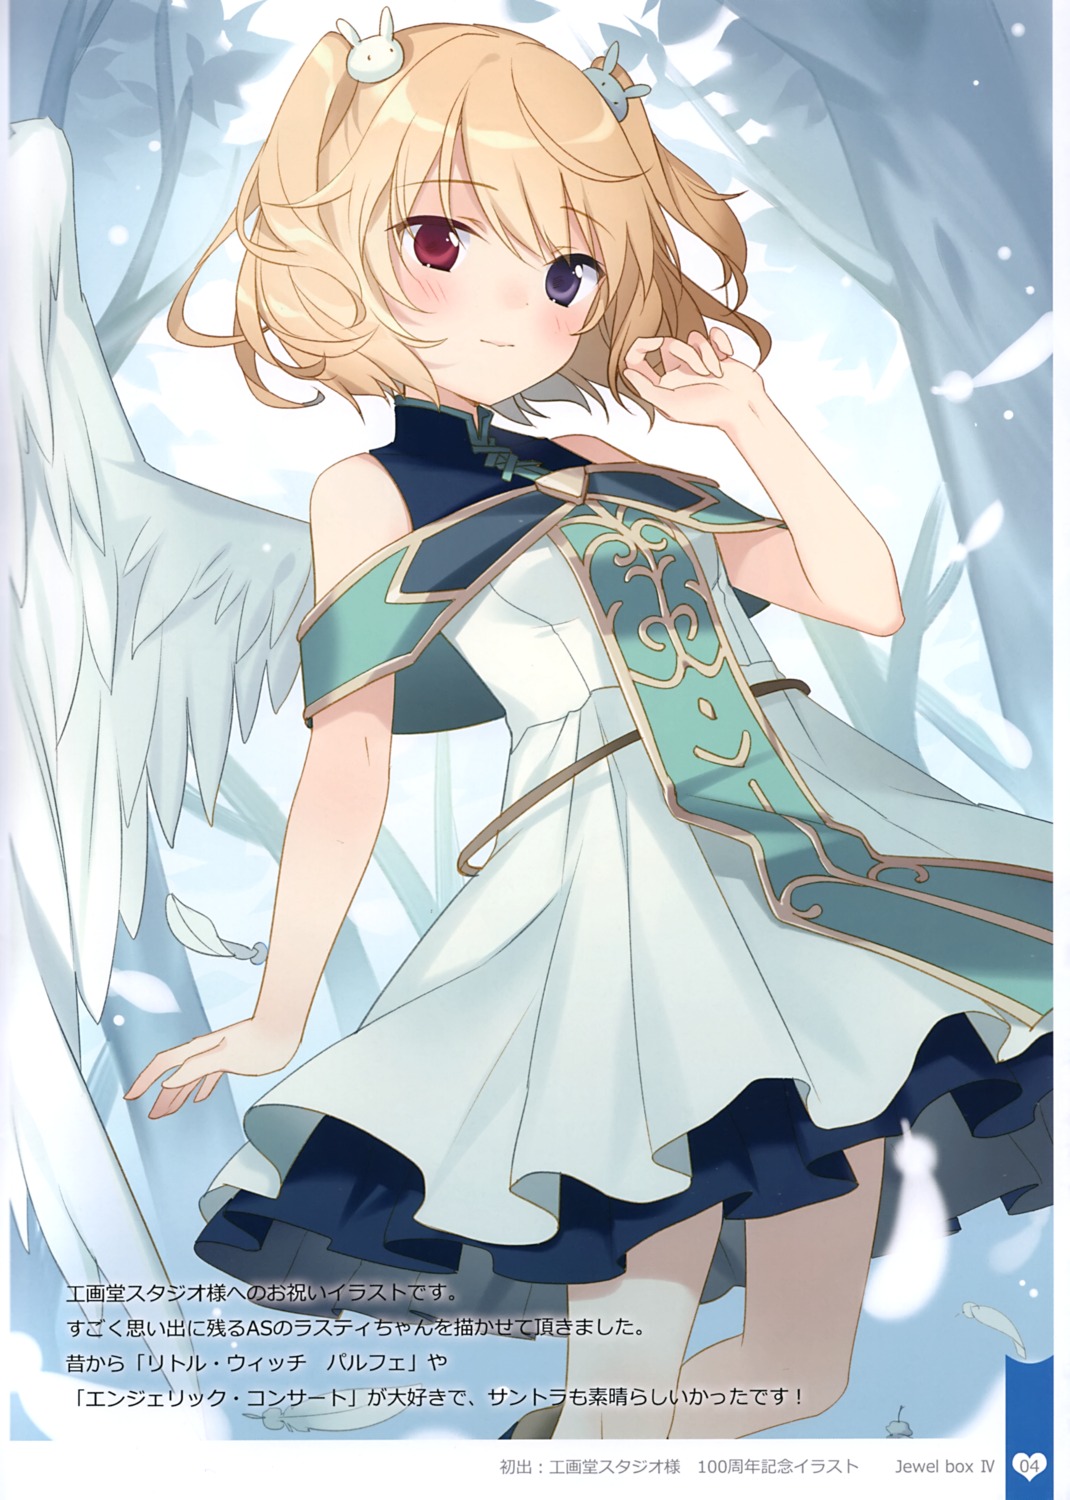 angelic_serenade dress heterochromia lasty_farson reverie rie wings